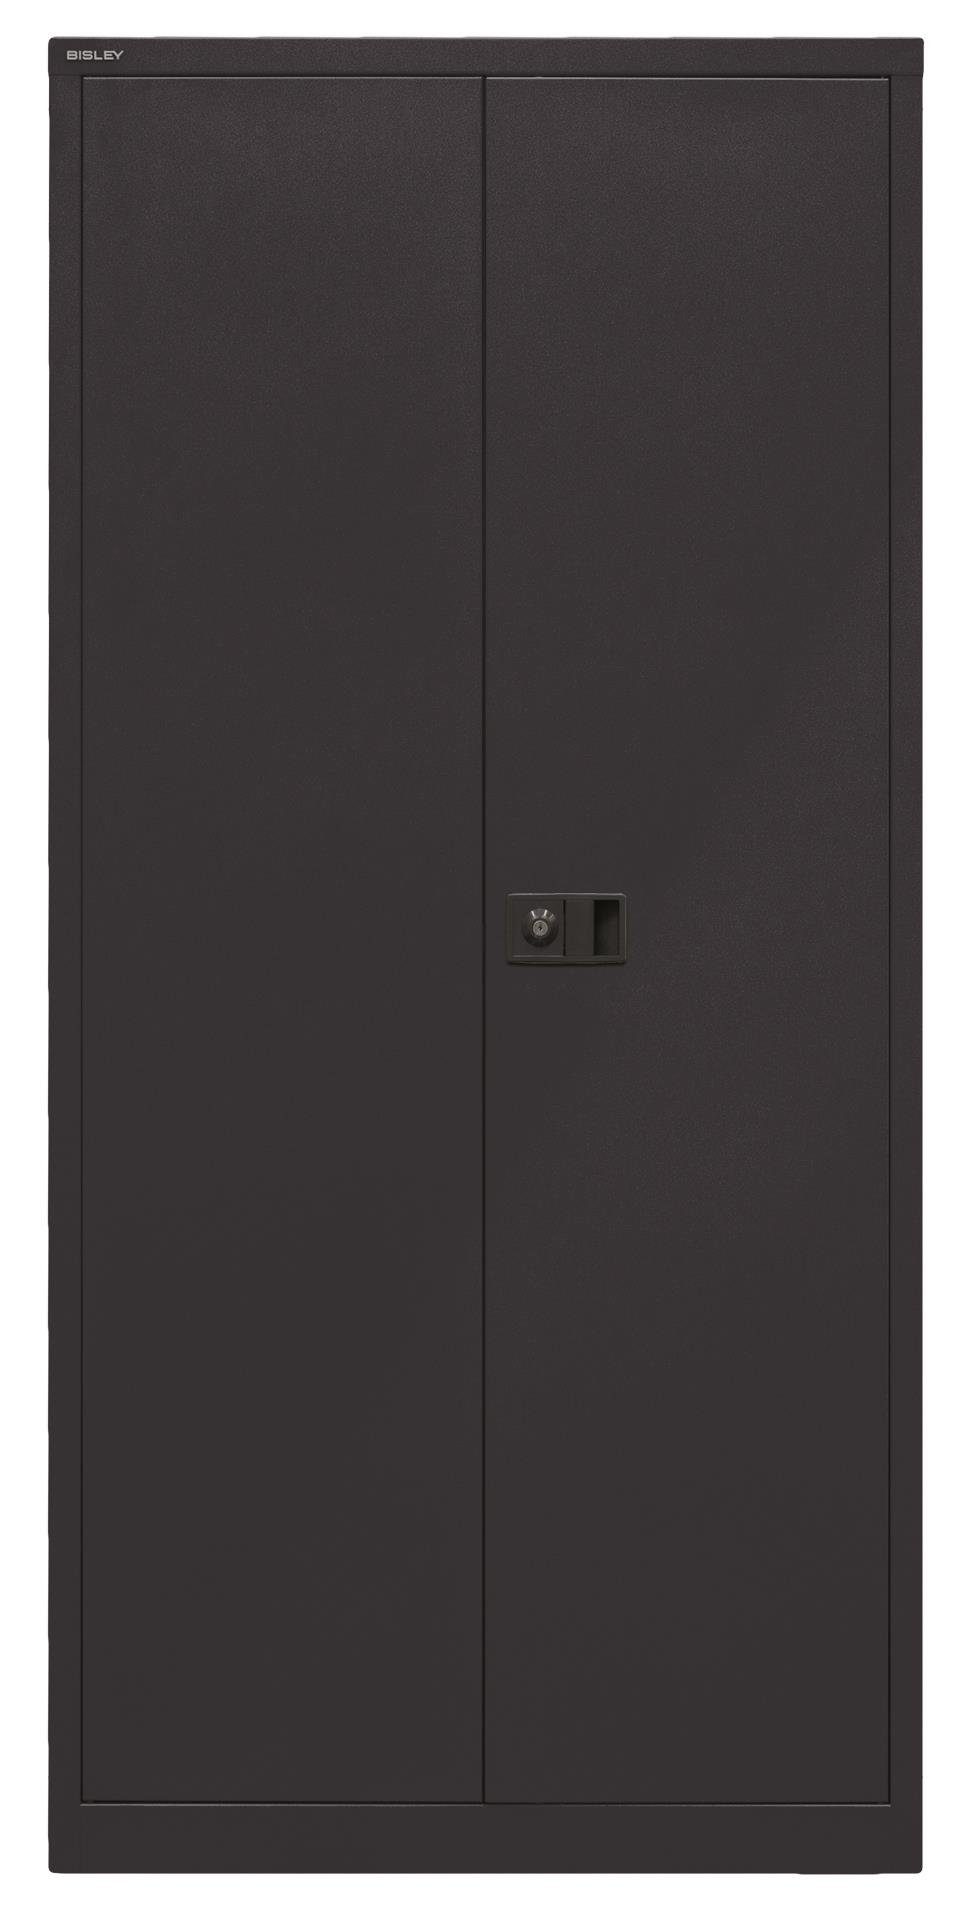 Garderobenschrank Universal 633 Bisley schwarz